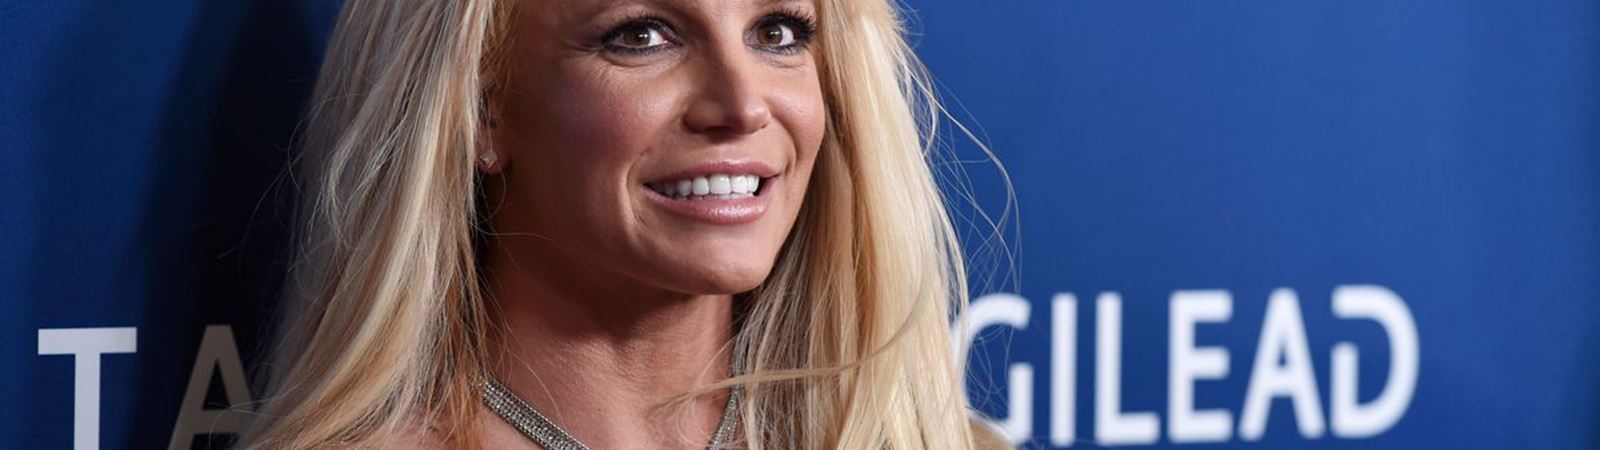 Britney Spears e o dilema da tutela!